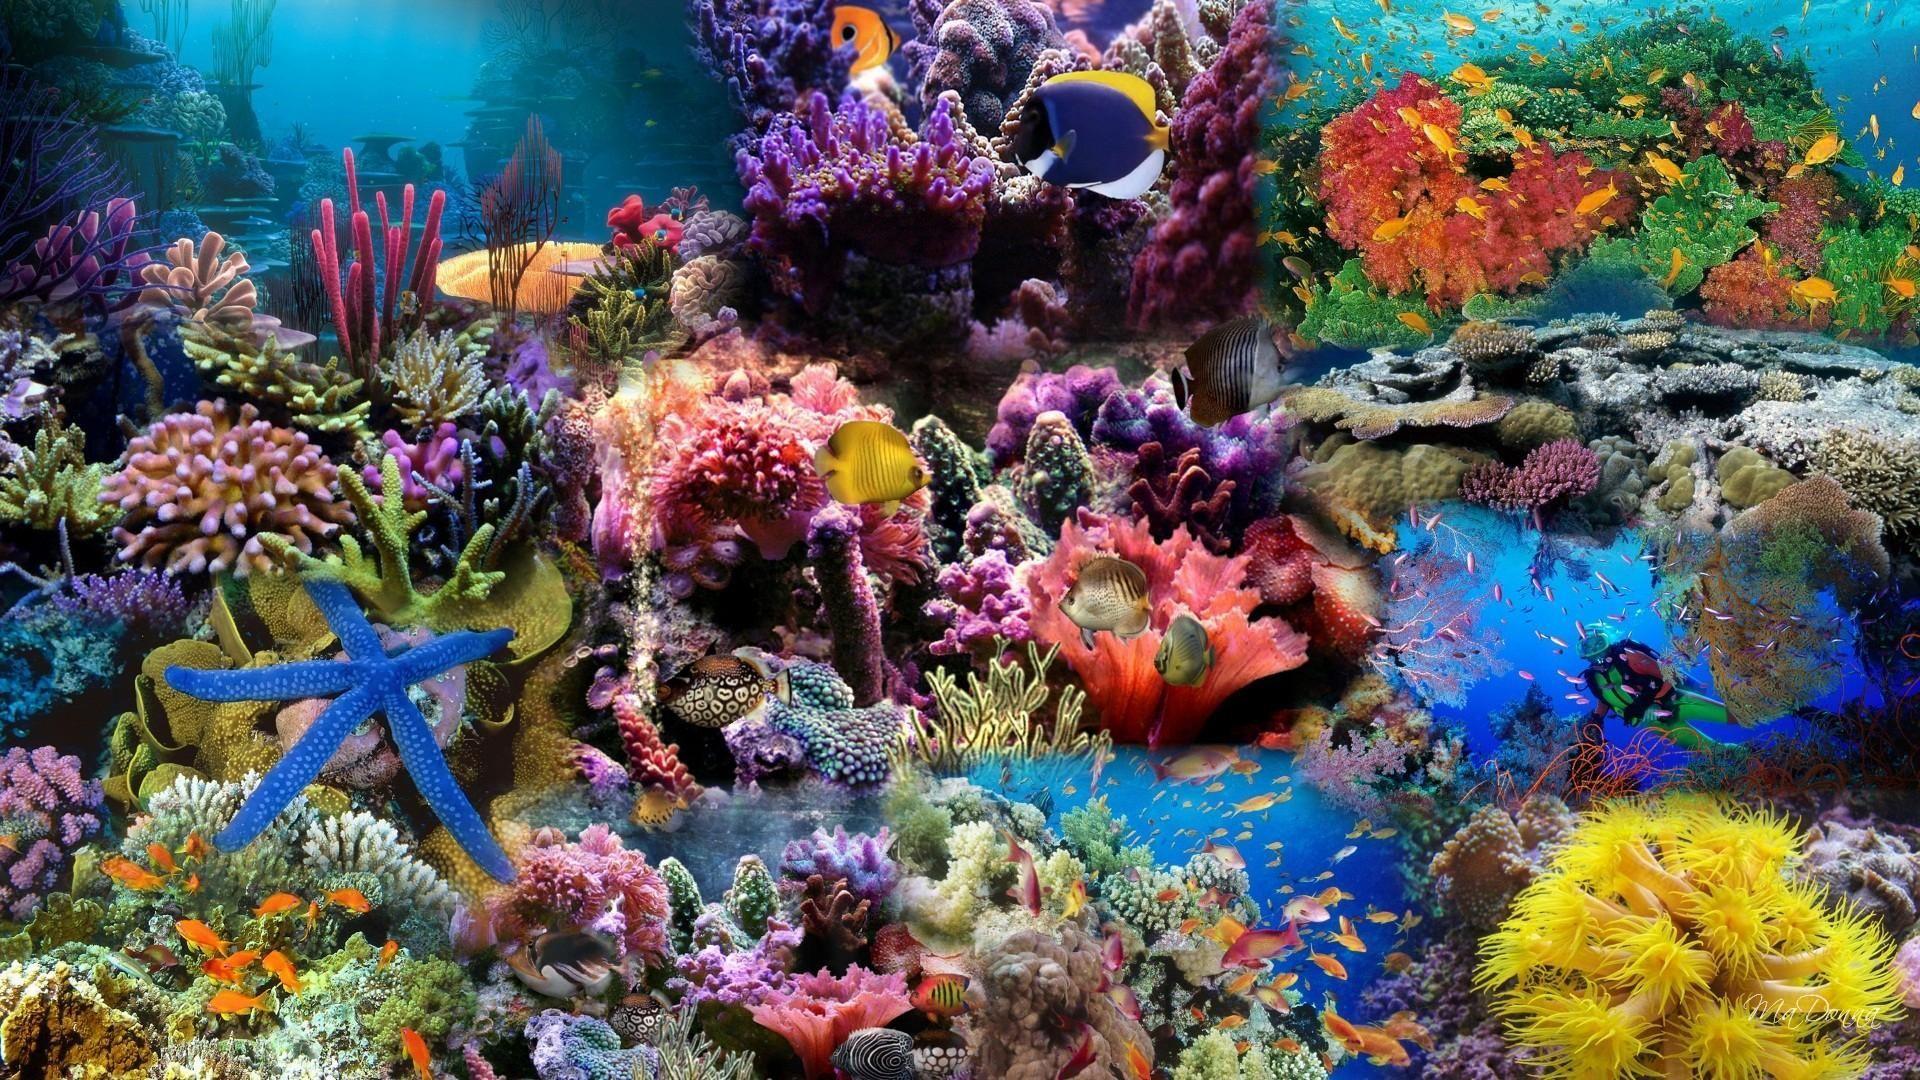 Ocean Coral Reef Wallpapers - Top Free Ocean Coral Reef Backgrounds ...